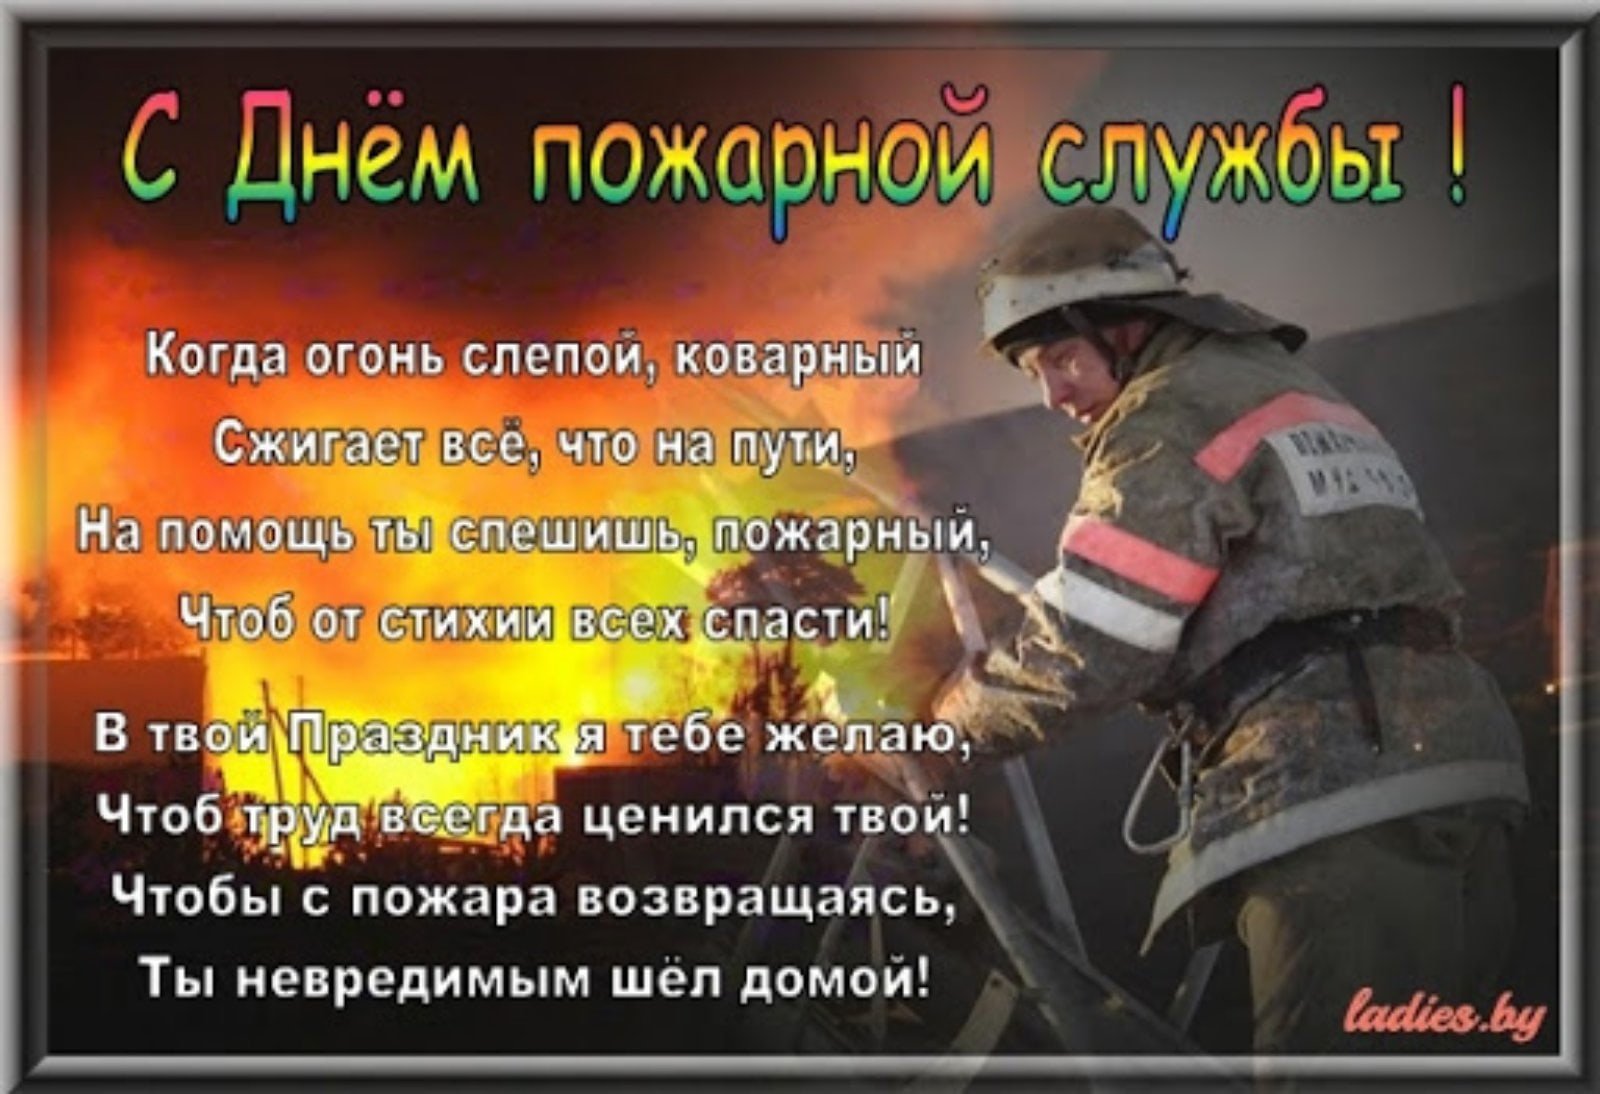 Поздравление с днем советской пожарной охраны. С днем пожарной охраны поздравление. Поздравление с днем пожарника. Поздравление с пожарной охраной. Открытка с днем пожарника.